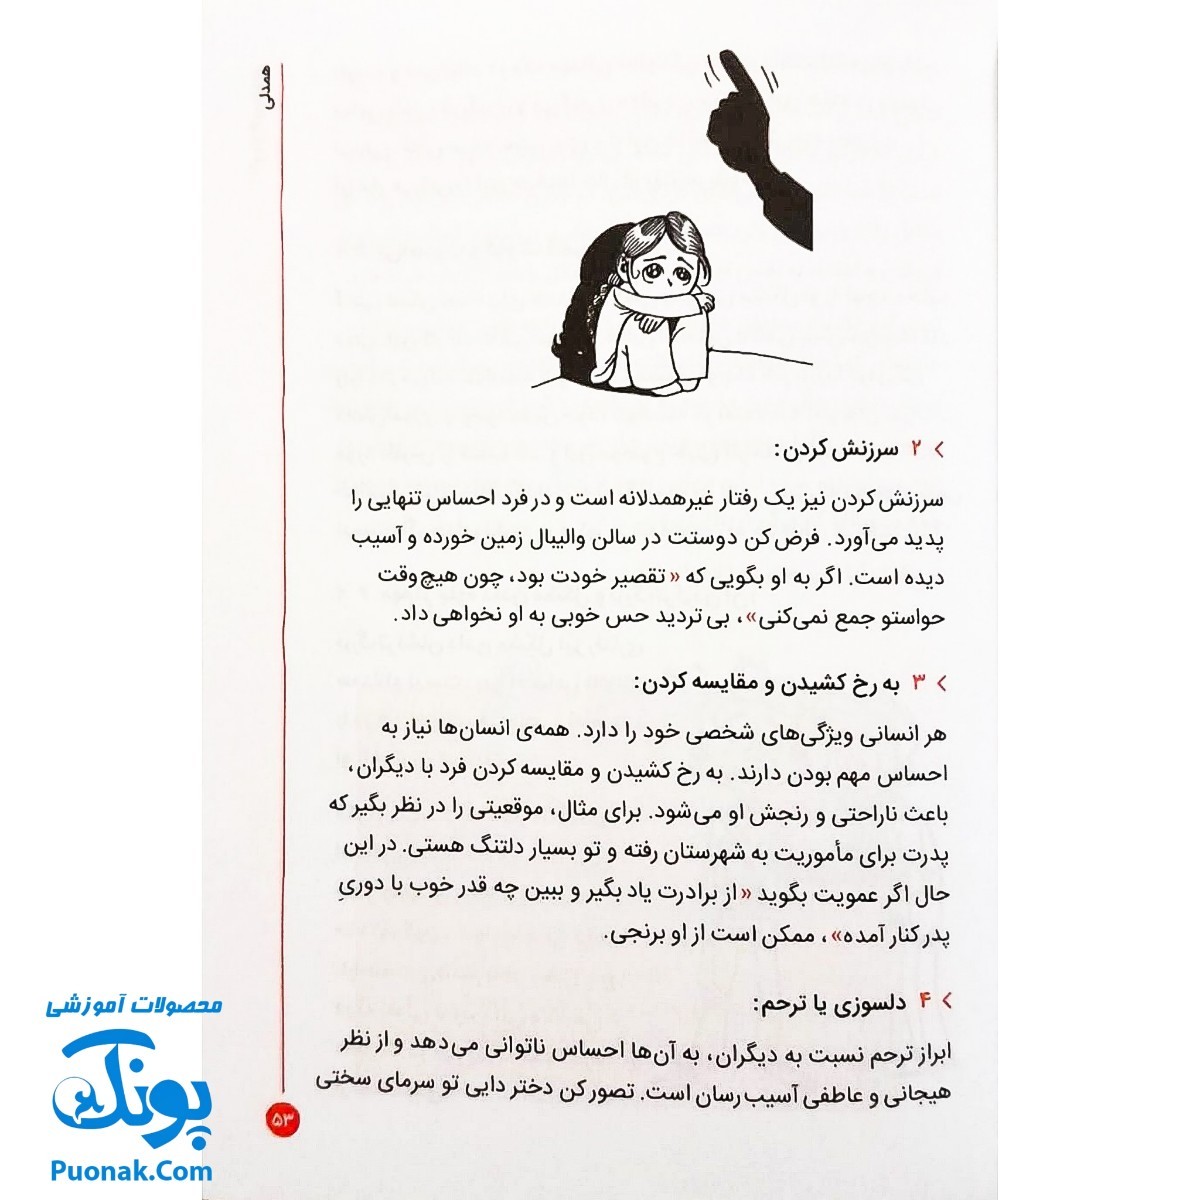 کتاب مهارت های زندگی برای نوجوانان - پرتو سیف اللهی